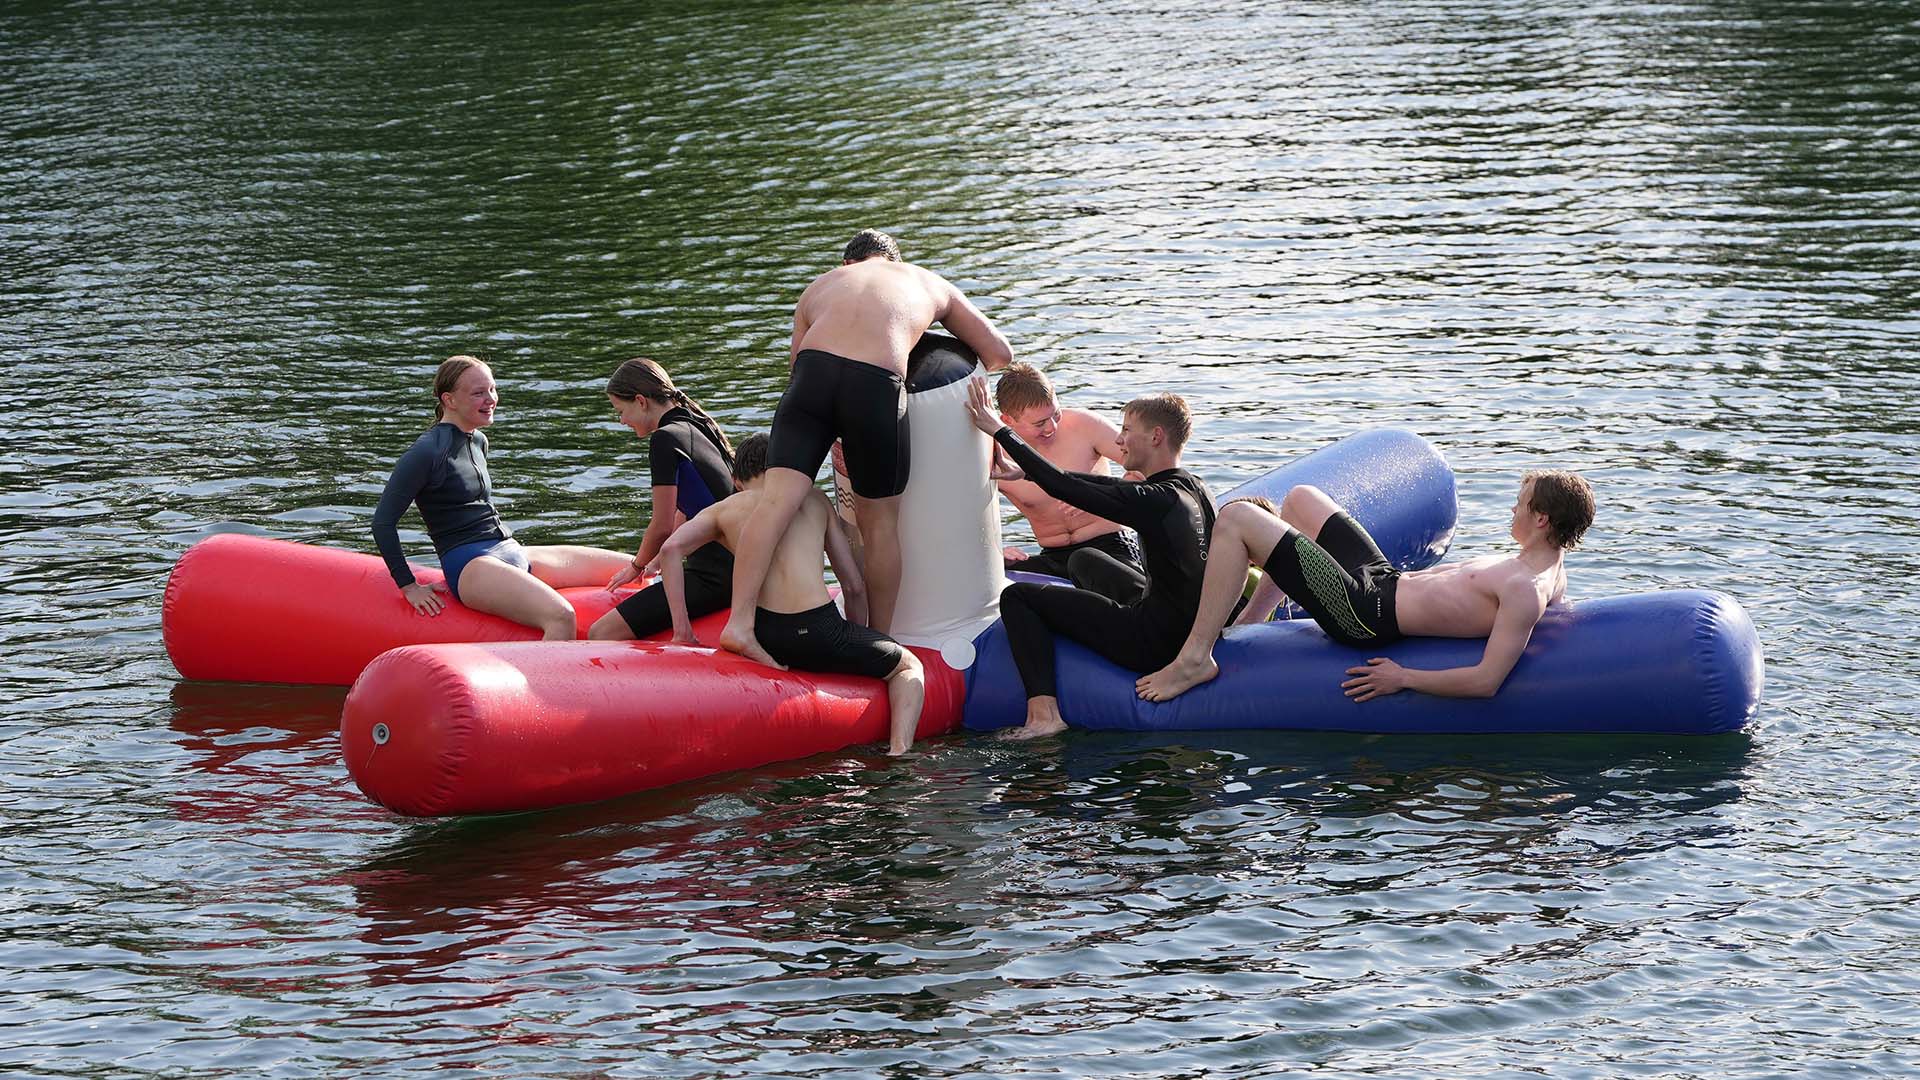 Inmitten eines Sees schwimmt ein aufgeblasenes Wasserspielgerät, die sogenannte Krake, auf dem sich Jugendliche befinden.